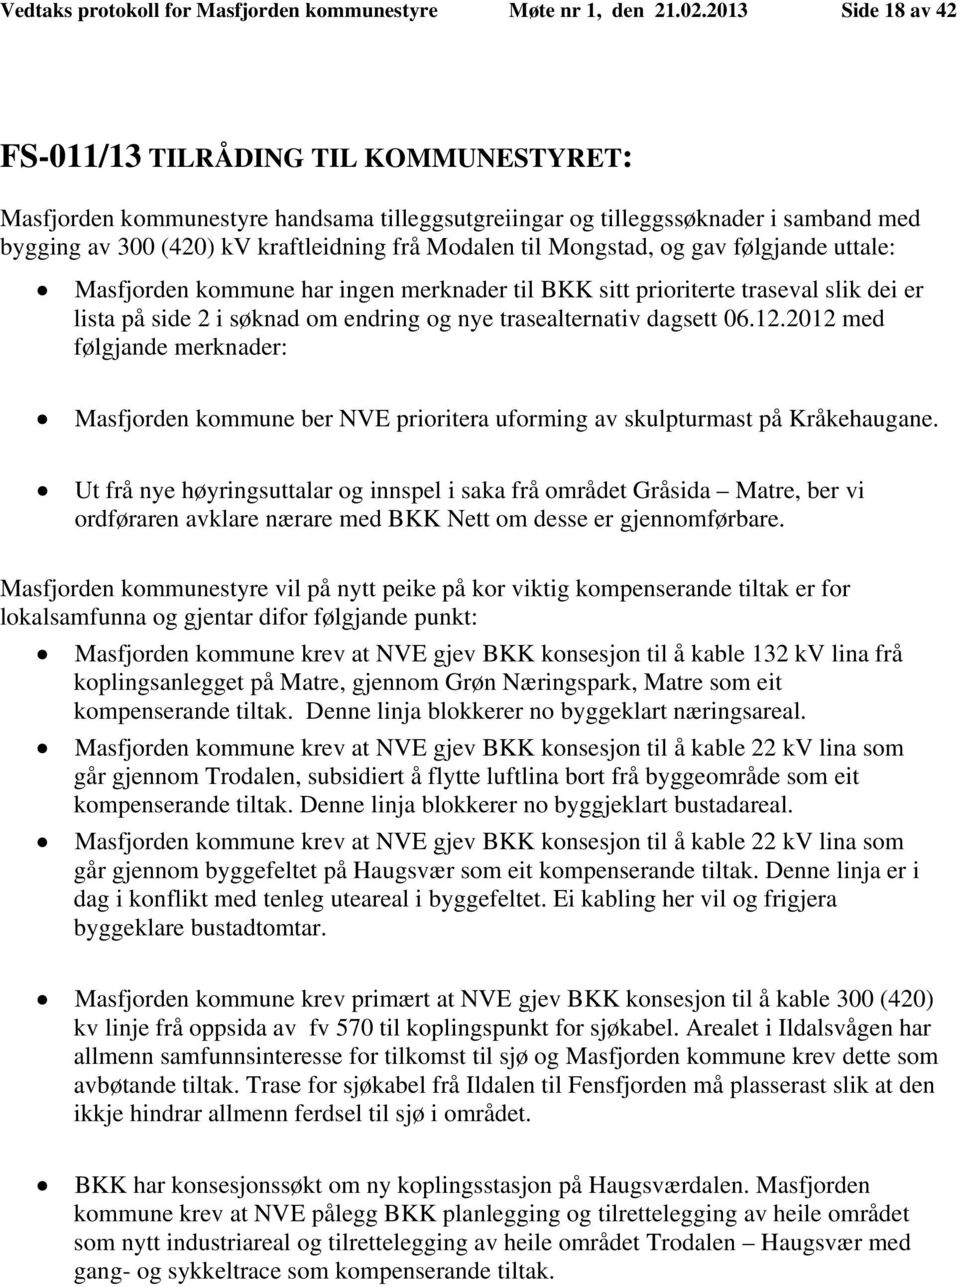 Mongstad, og gav følgjande uttale: Masfjorden kommune har ingen merknader til BKK sitt prioriterte traseval slik dei er lista på side 2 i søknad om endring og nye trasealternativ dagsett 06.12.